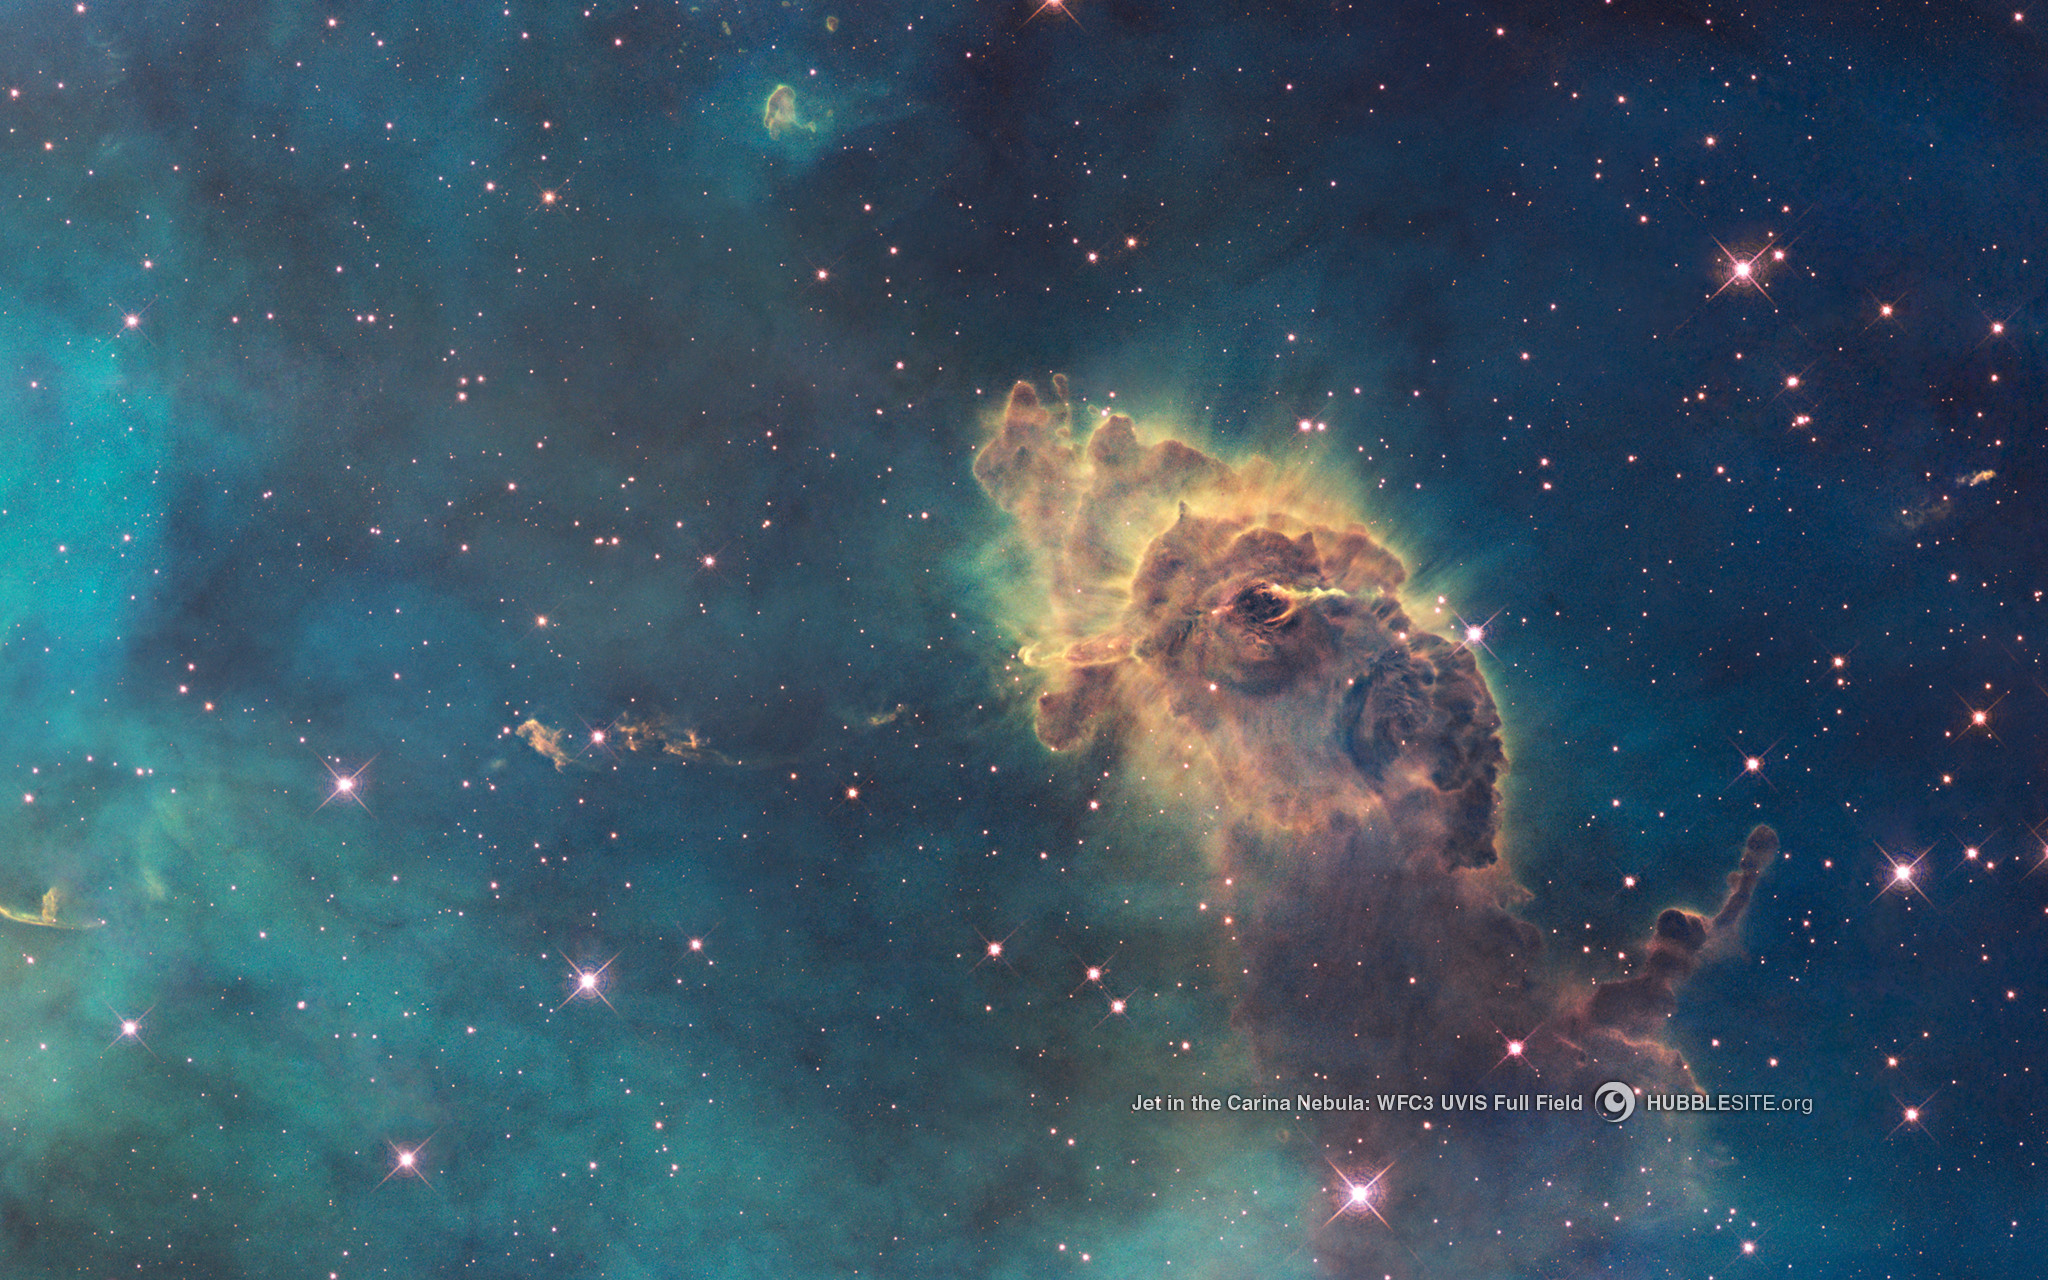 Jet in the Carina Nebula